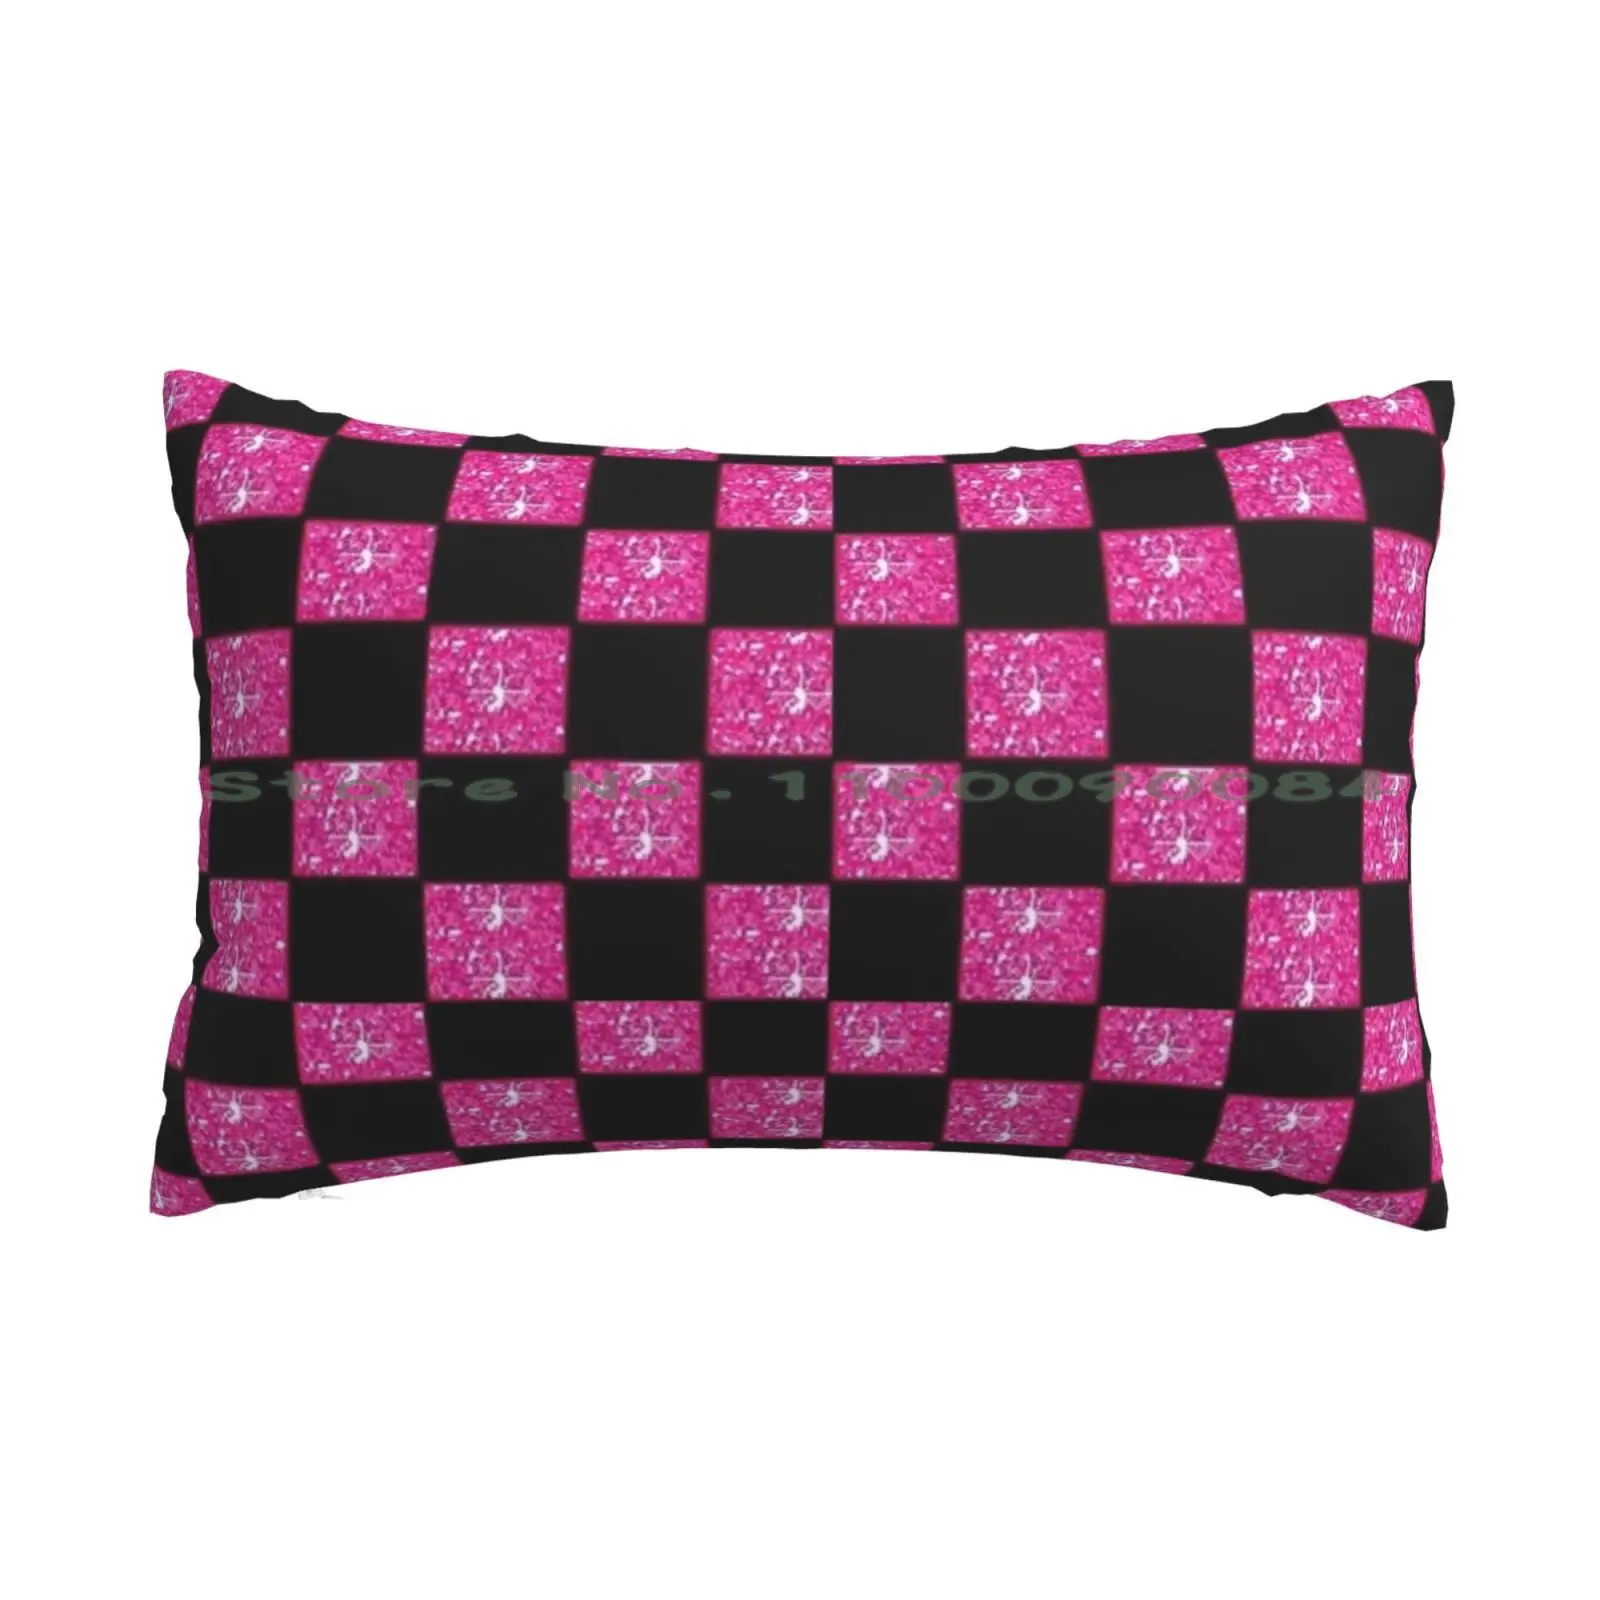 

Чехол для подушки Y2k с изображением сцены, розового цвета, 20x30, 50*75, для дивана, спальни, планеты, звезды, Вселенная, космос, длинная прямоуголь...